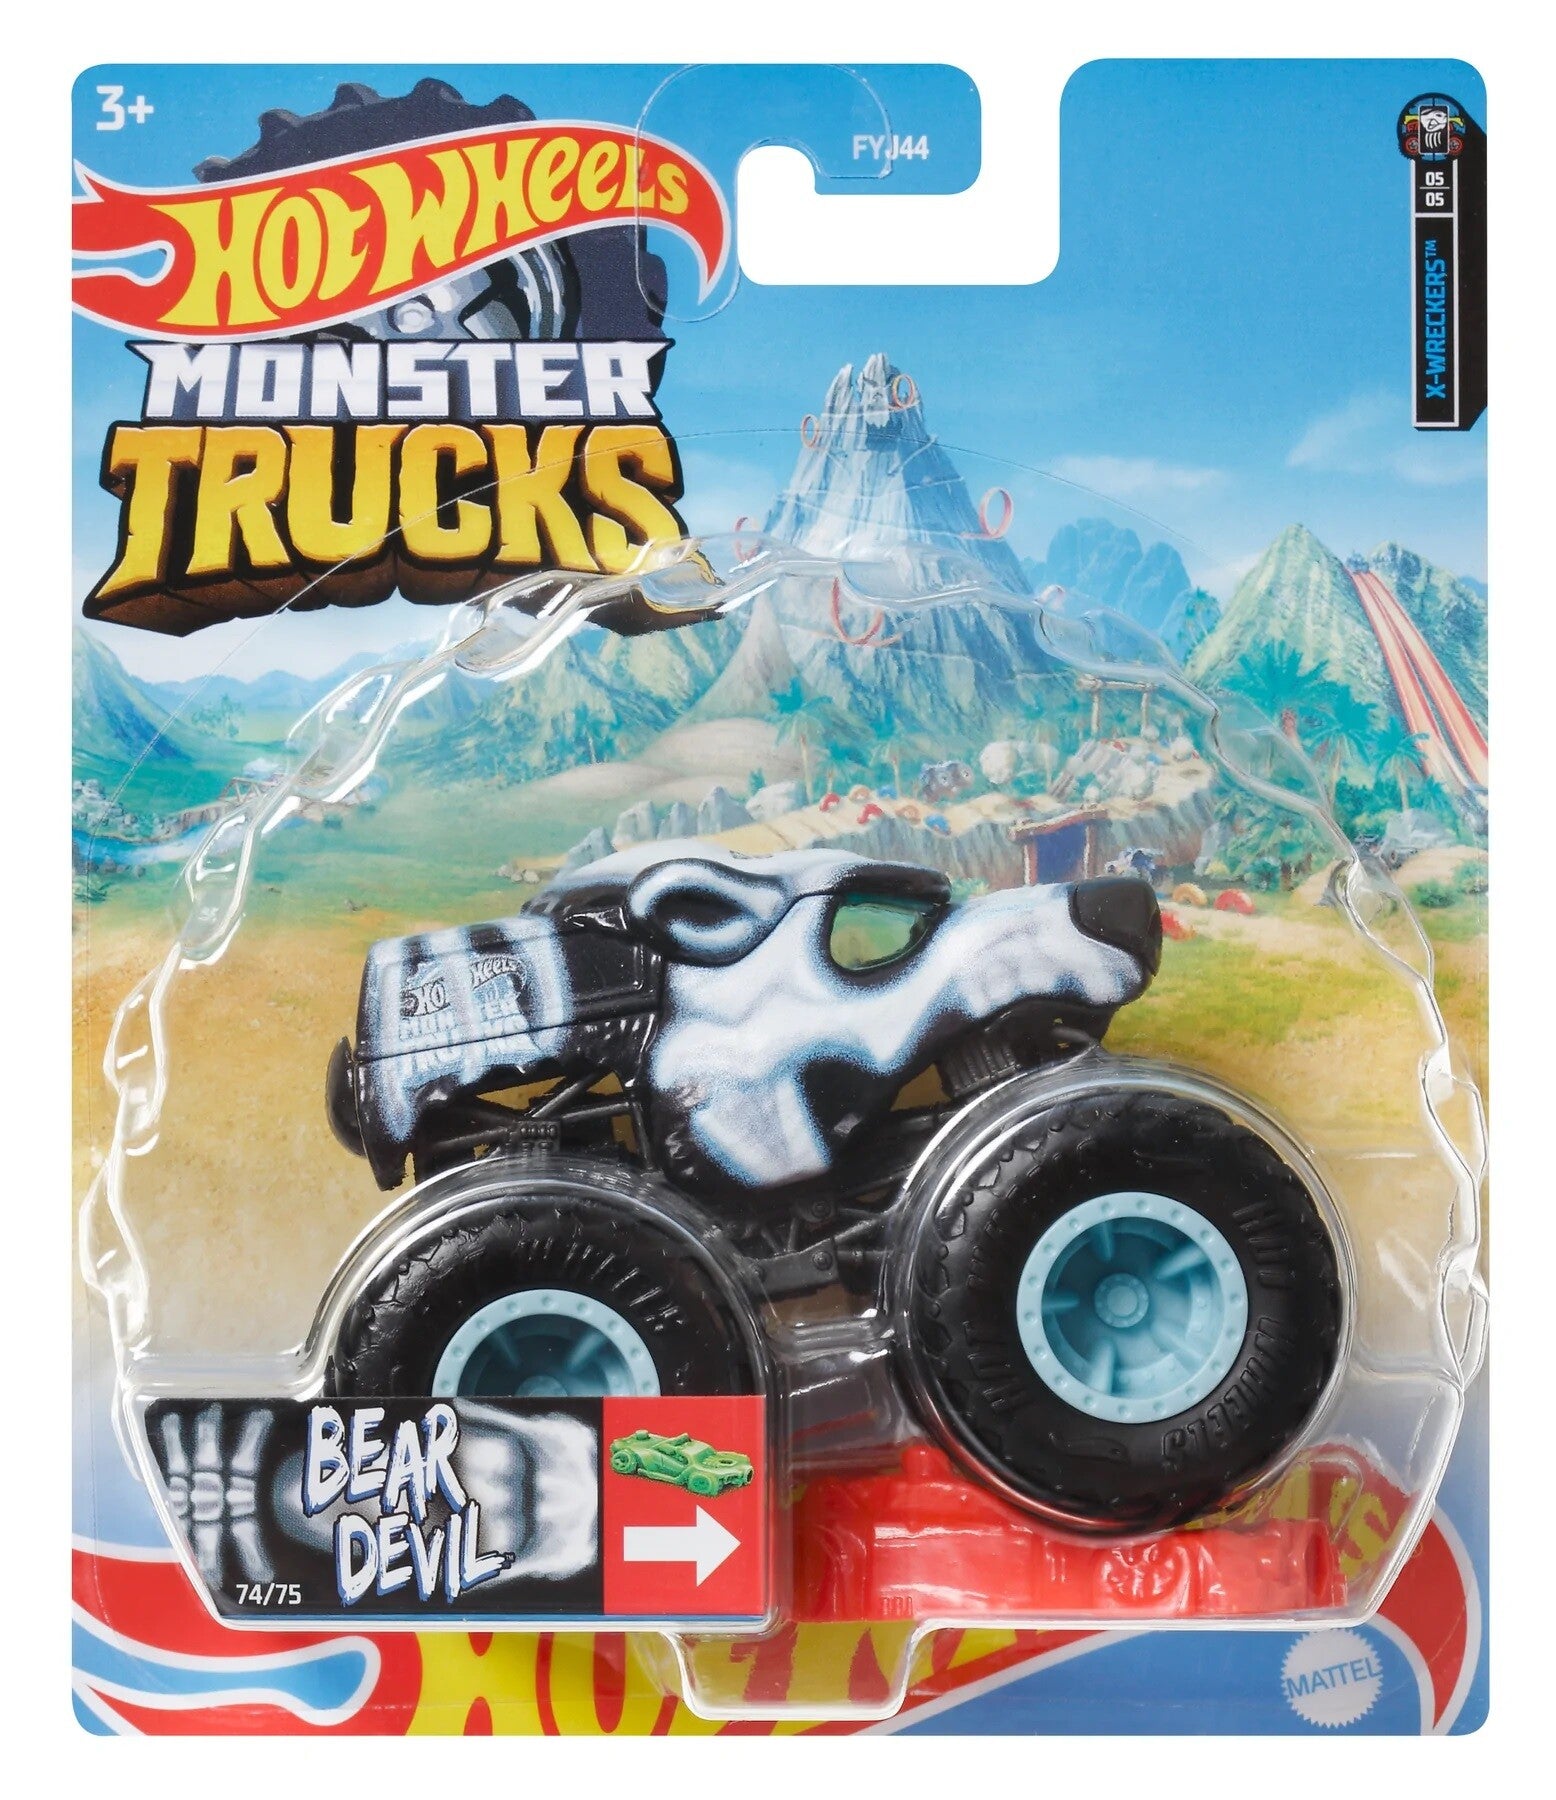 Hot Wheels Monster Trucks 1:64 Ast